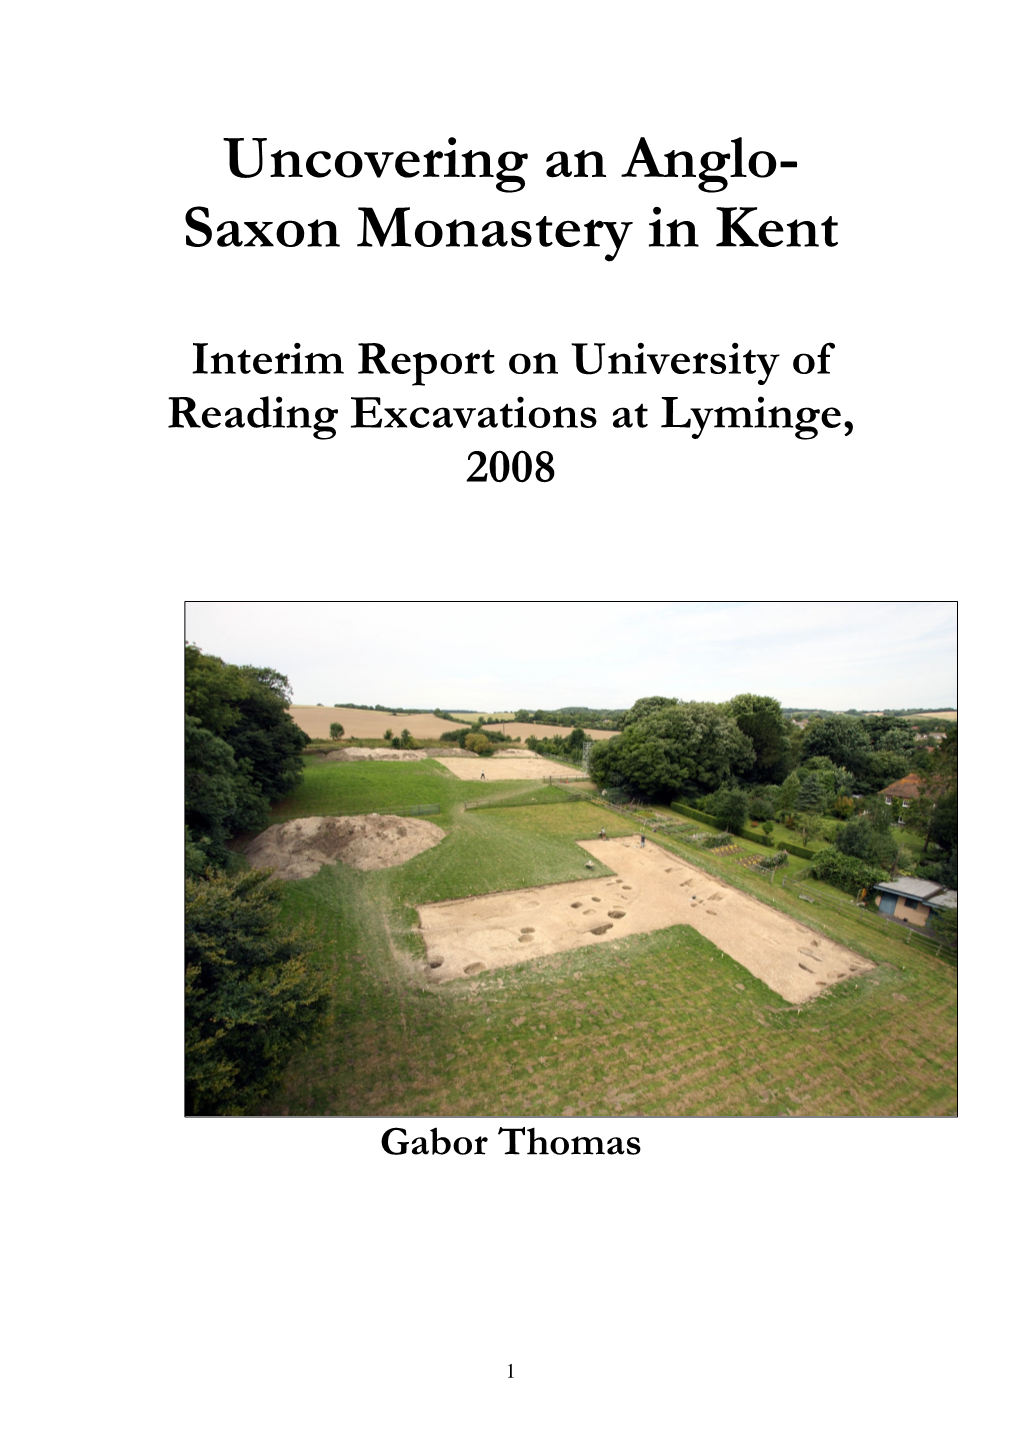 Saxon Monastery in Kent